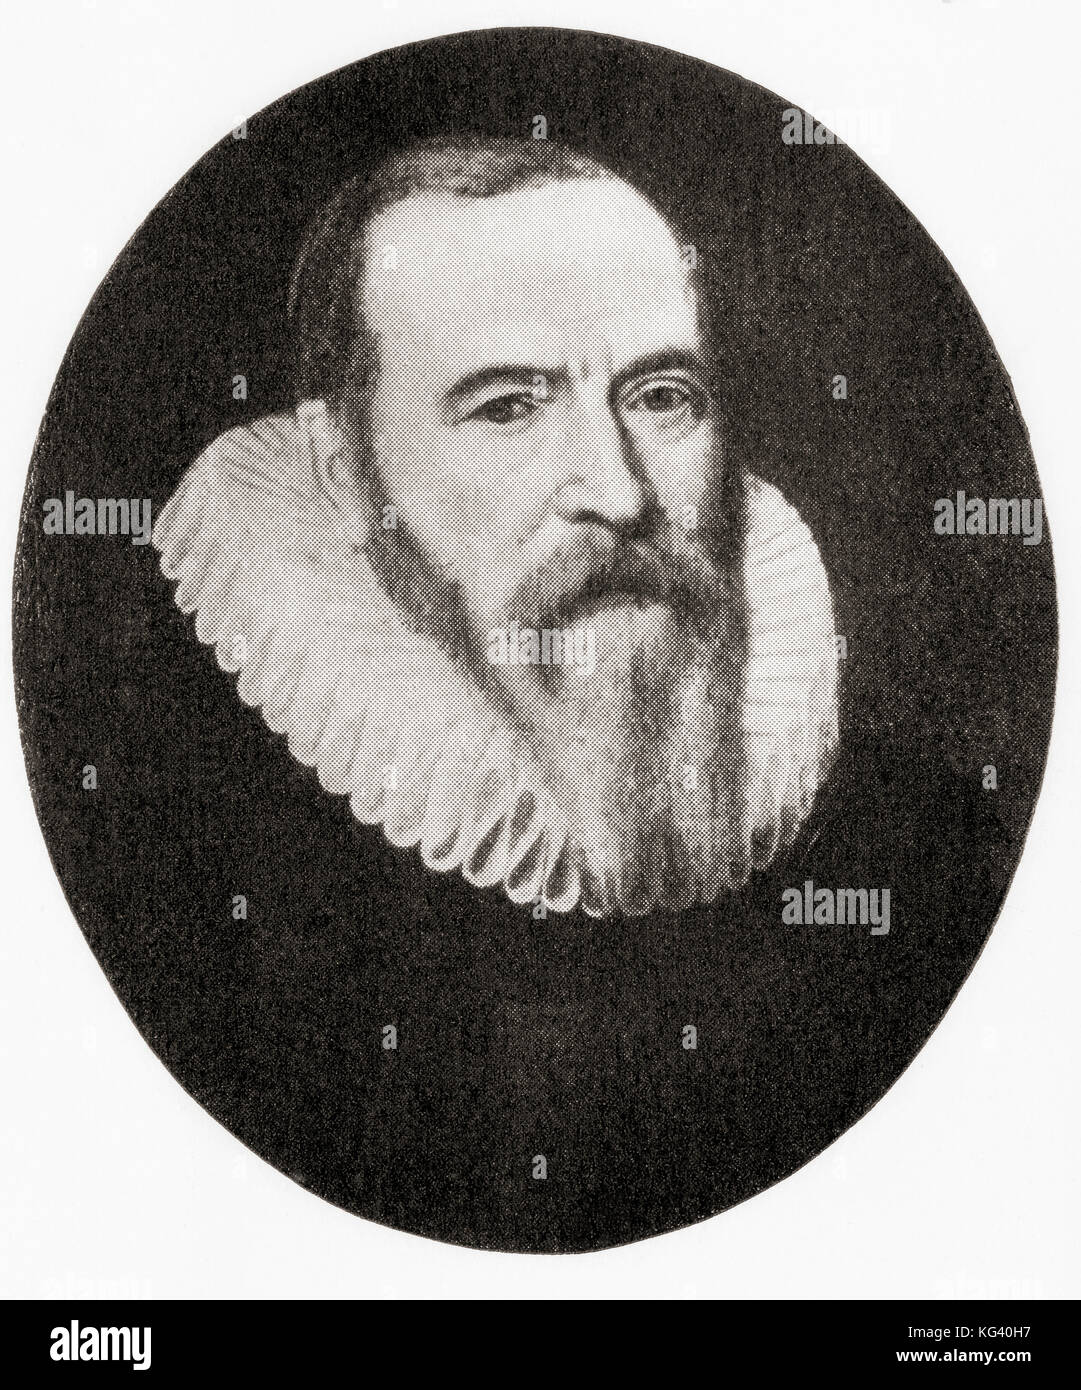 Johan van oldenbarnevelt, 1547 - 1619. niederländischer Staatsmann, der eine wichtige Rolle im Kampf für die Unabhängigkeit von Spanien gespielt. Von hutchinson Geschichte der Nationen, veröffentlicht 1915. Stockfoto